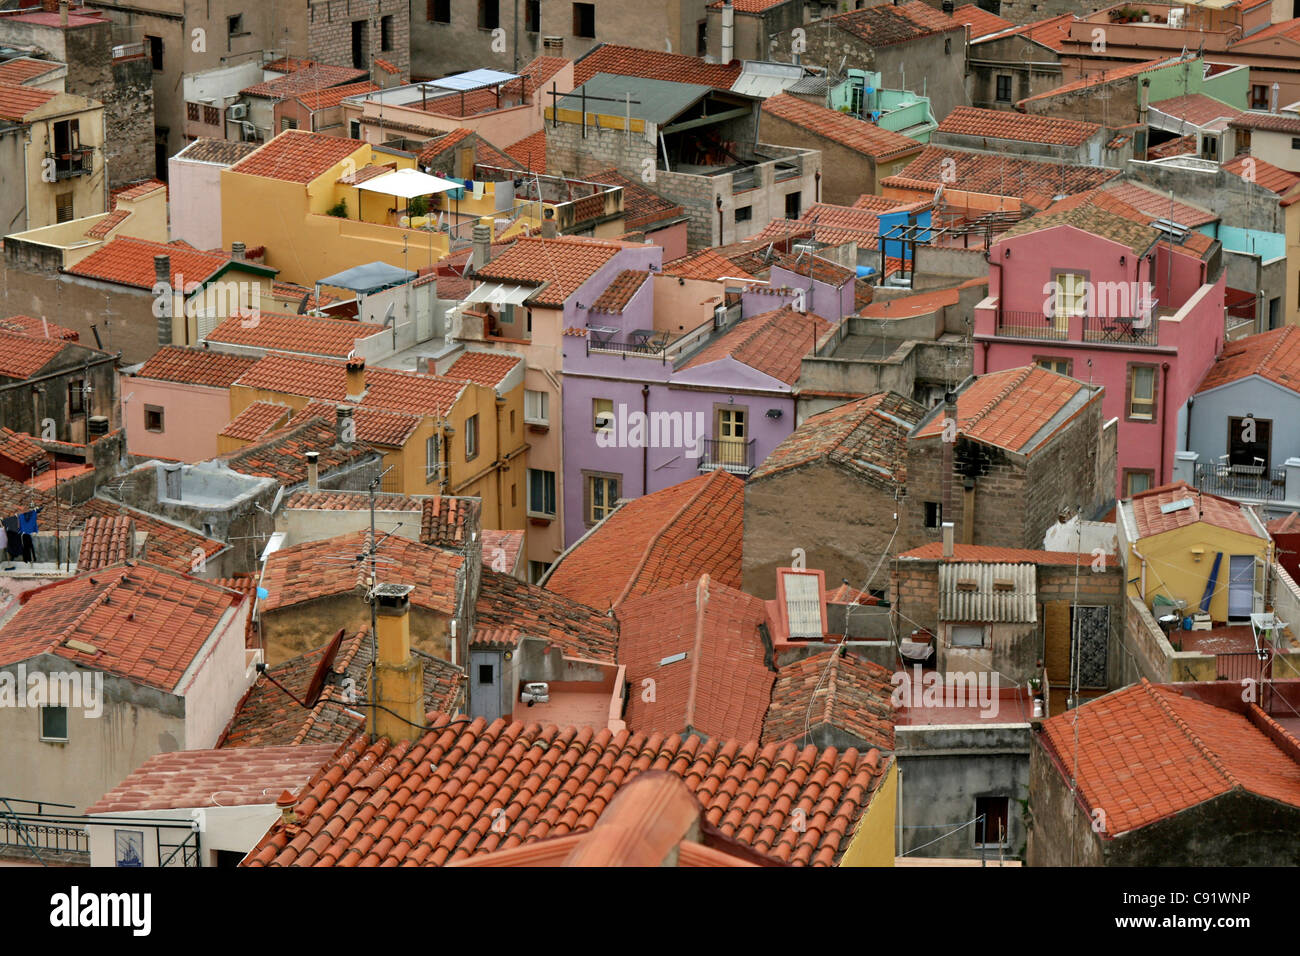 Bosa est une ville colorée de bâtiments avec leur toit de tuiles rouges des murs peints et les maisons construites très proches dans des rues étroites. Banque D'Images